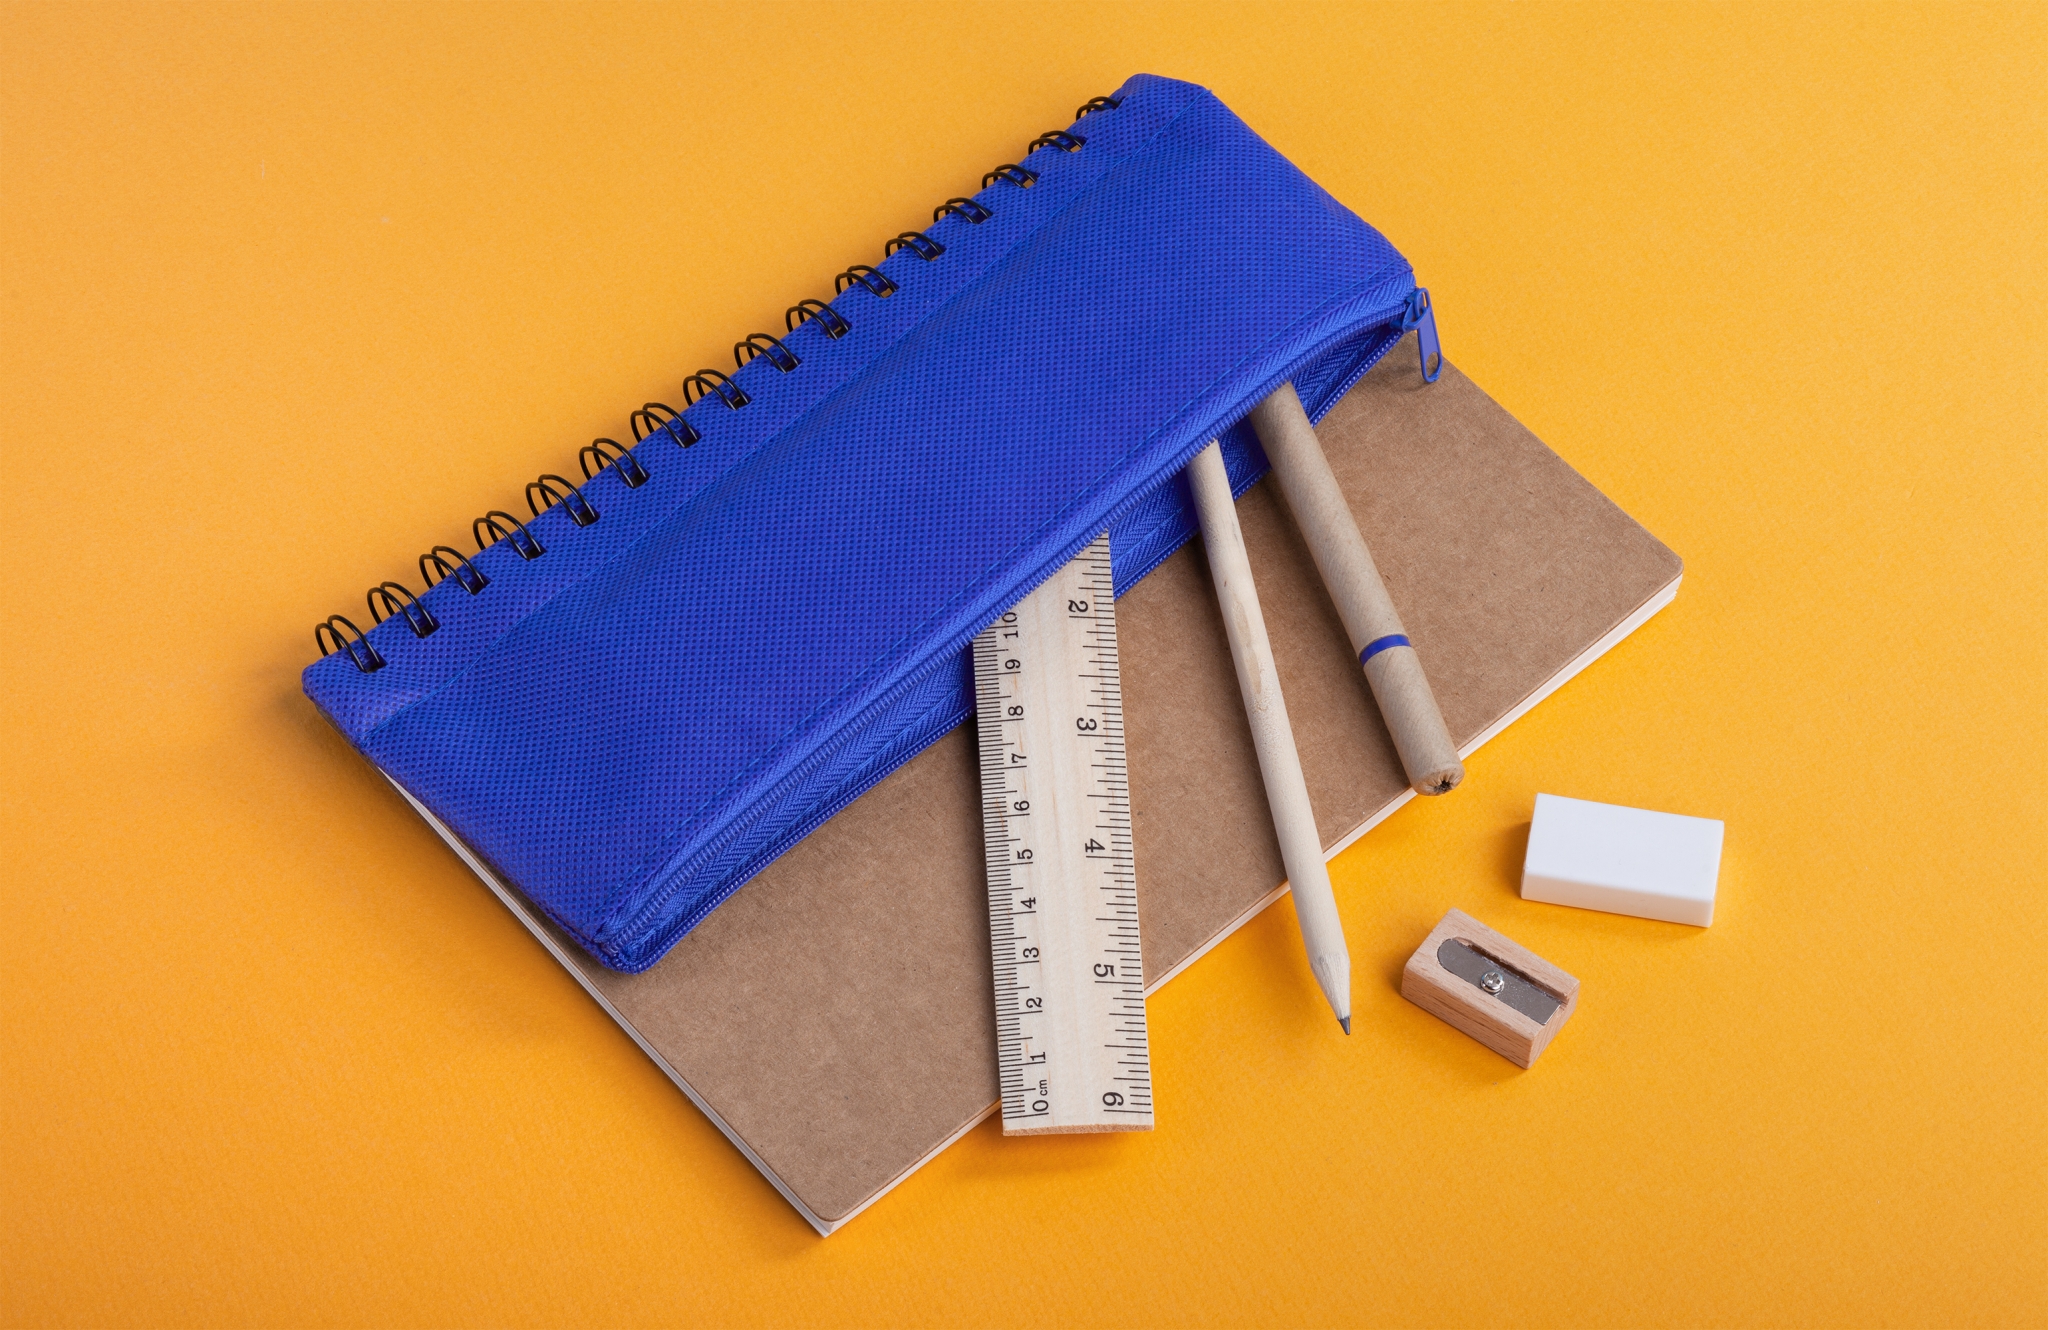 Блокнот "Full kit" с пеналом и канцелярскими принадлежностями, синий, переработанный картон/дерево/полиэстер